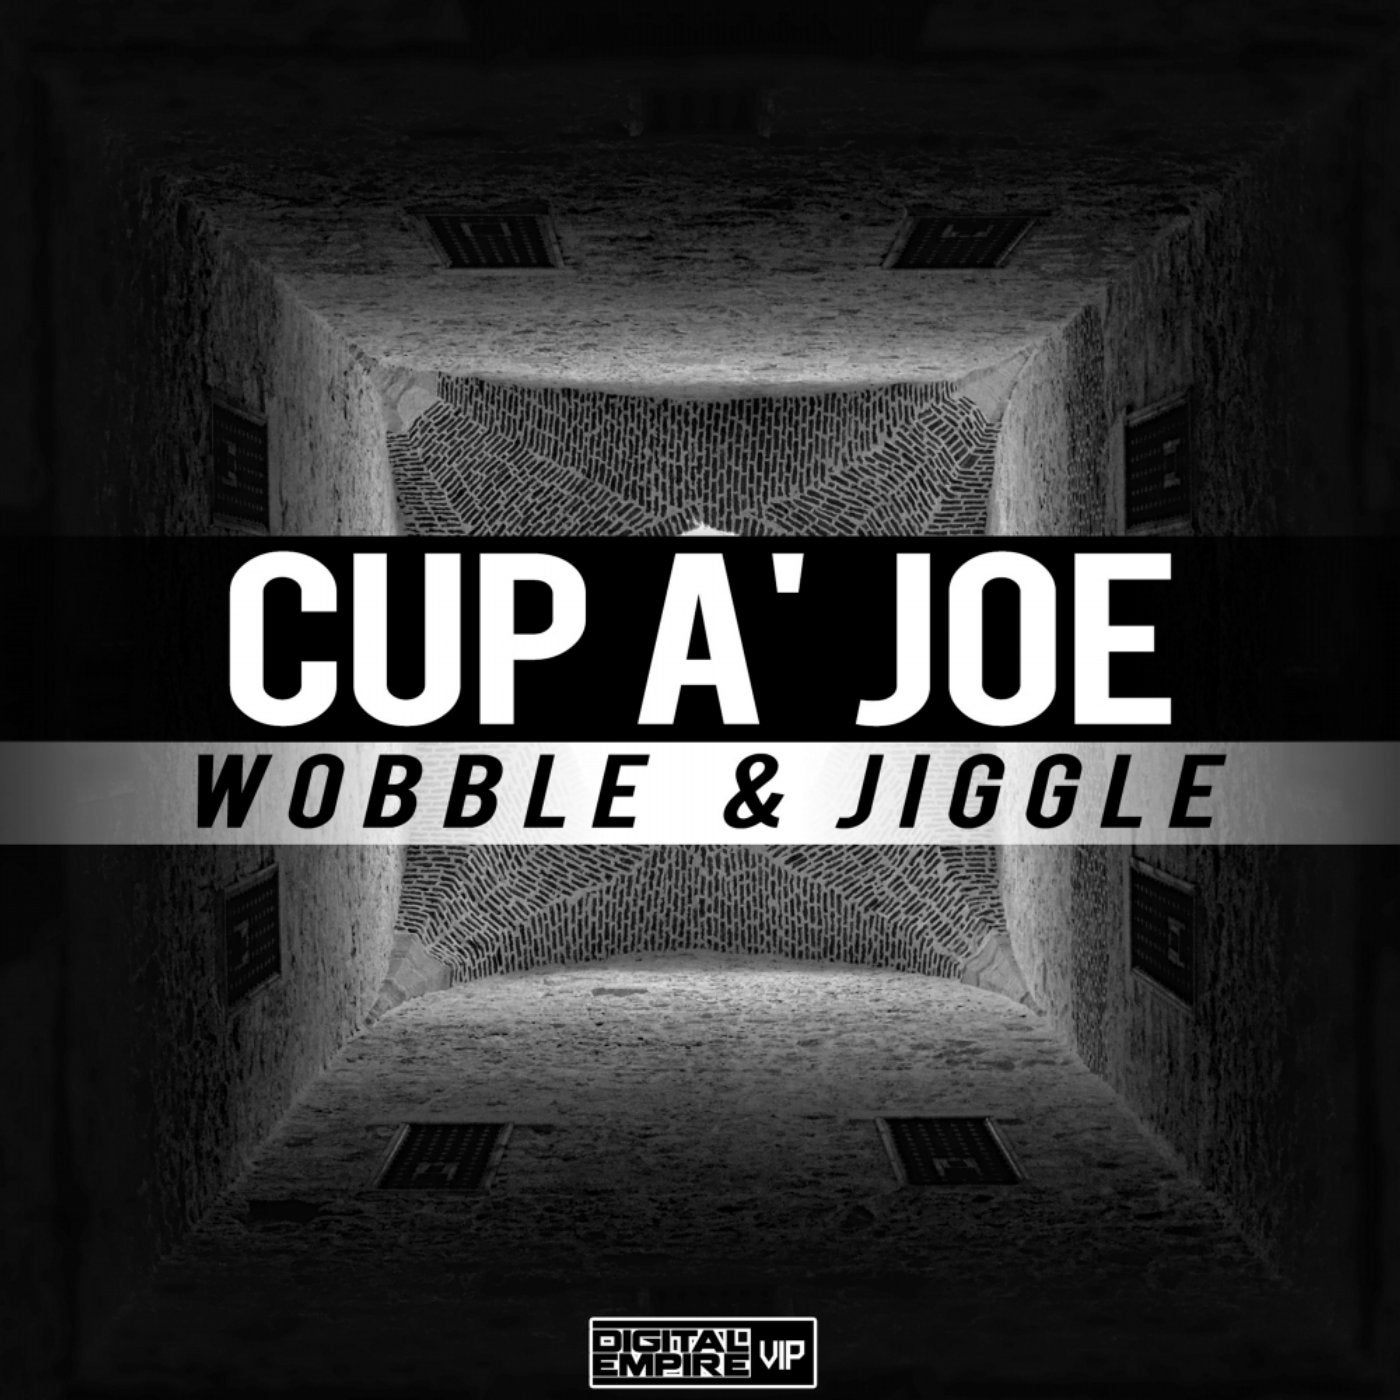 Wobble & Jiggle